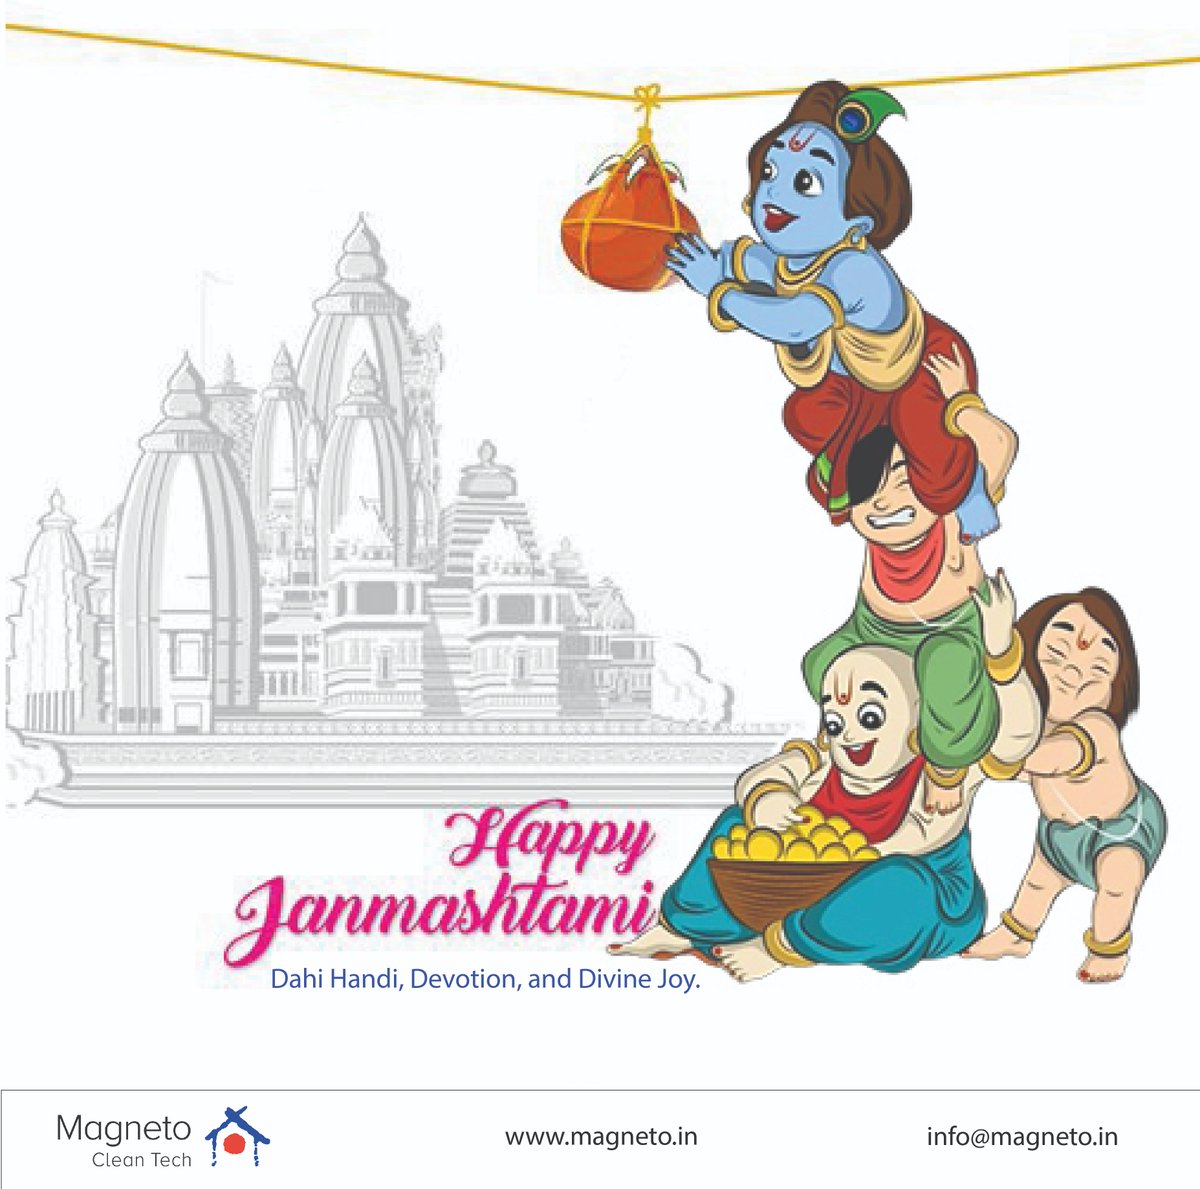 May the divine flute of Krishna play the sweetest tunes in your life. Happy Janmashtami!

#janamashtami #janamashtamispecial #CleanAirSolutions #healthyair #janamashtmicelebration #magnetocleantech #magneto #sanitization #sanitizing